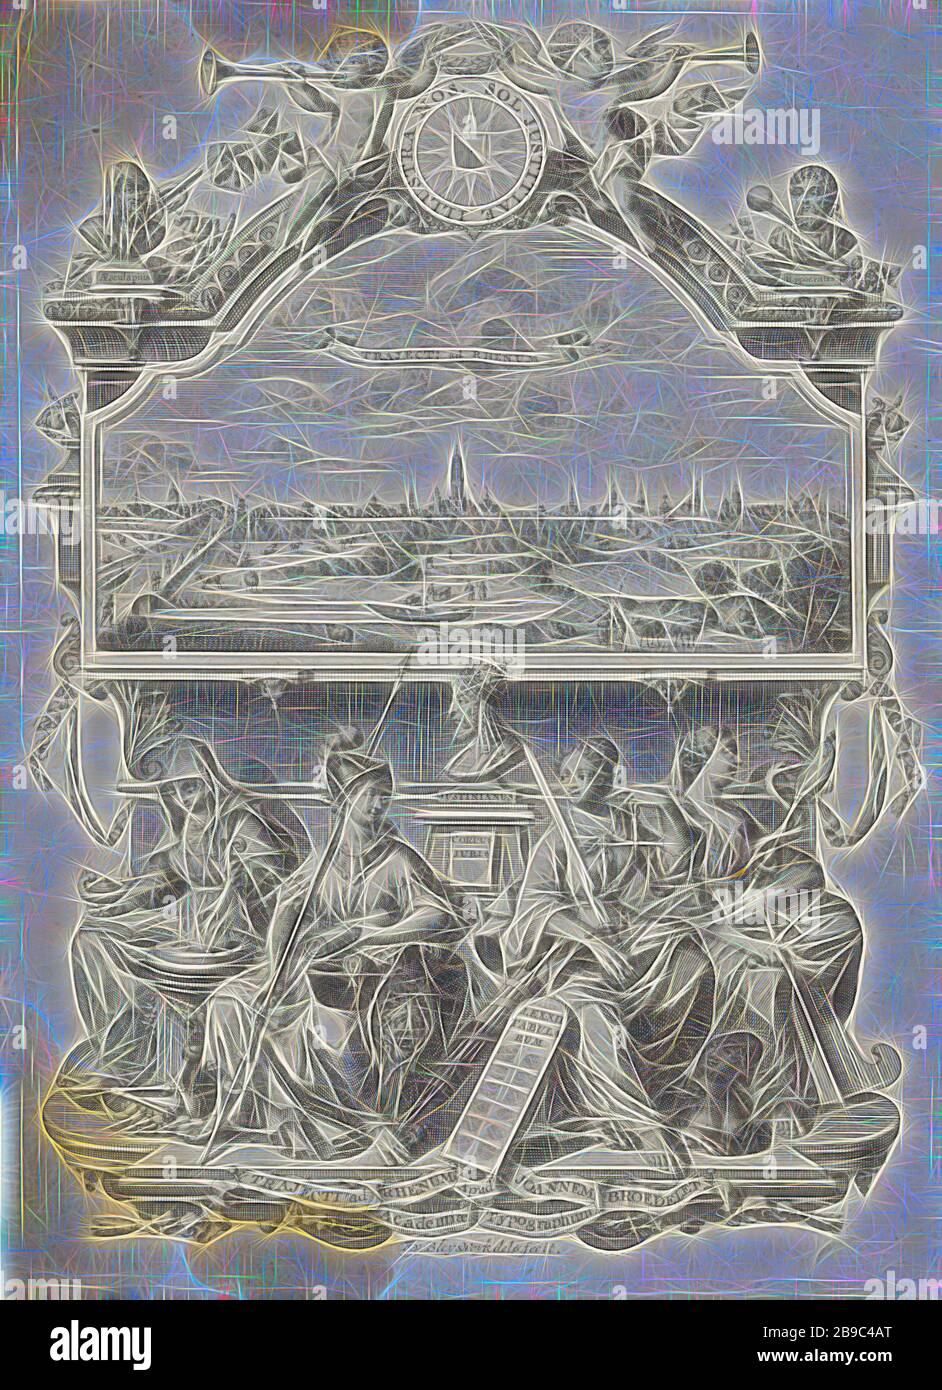 Vista di Utrecht e allegoria con Minerva e virtù, una vista della città di Utrecht con la silhouette della chiesa del Duomo in un ambiente architettonico con la dea Minerva e tre personificazioni delle virtù: la temperanza, della giustizia e della prudenza. La lista è coronato da un scudo rotondo con il motto dell'Università di Utrecht tra due putti che soffia su trombe, (storia di) Minerva (Pallas, Athena), prudenza, 'Prudentia", "prudenza" (RIPA), una delle quattro virtù cardinali - la temperanza, 'Temperantia', 'Temperanza' (RIPA), la giustizia, "Justitia', 'Giustitia divina' (RIPA), Utrecht, François va Foto Stock